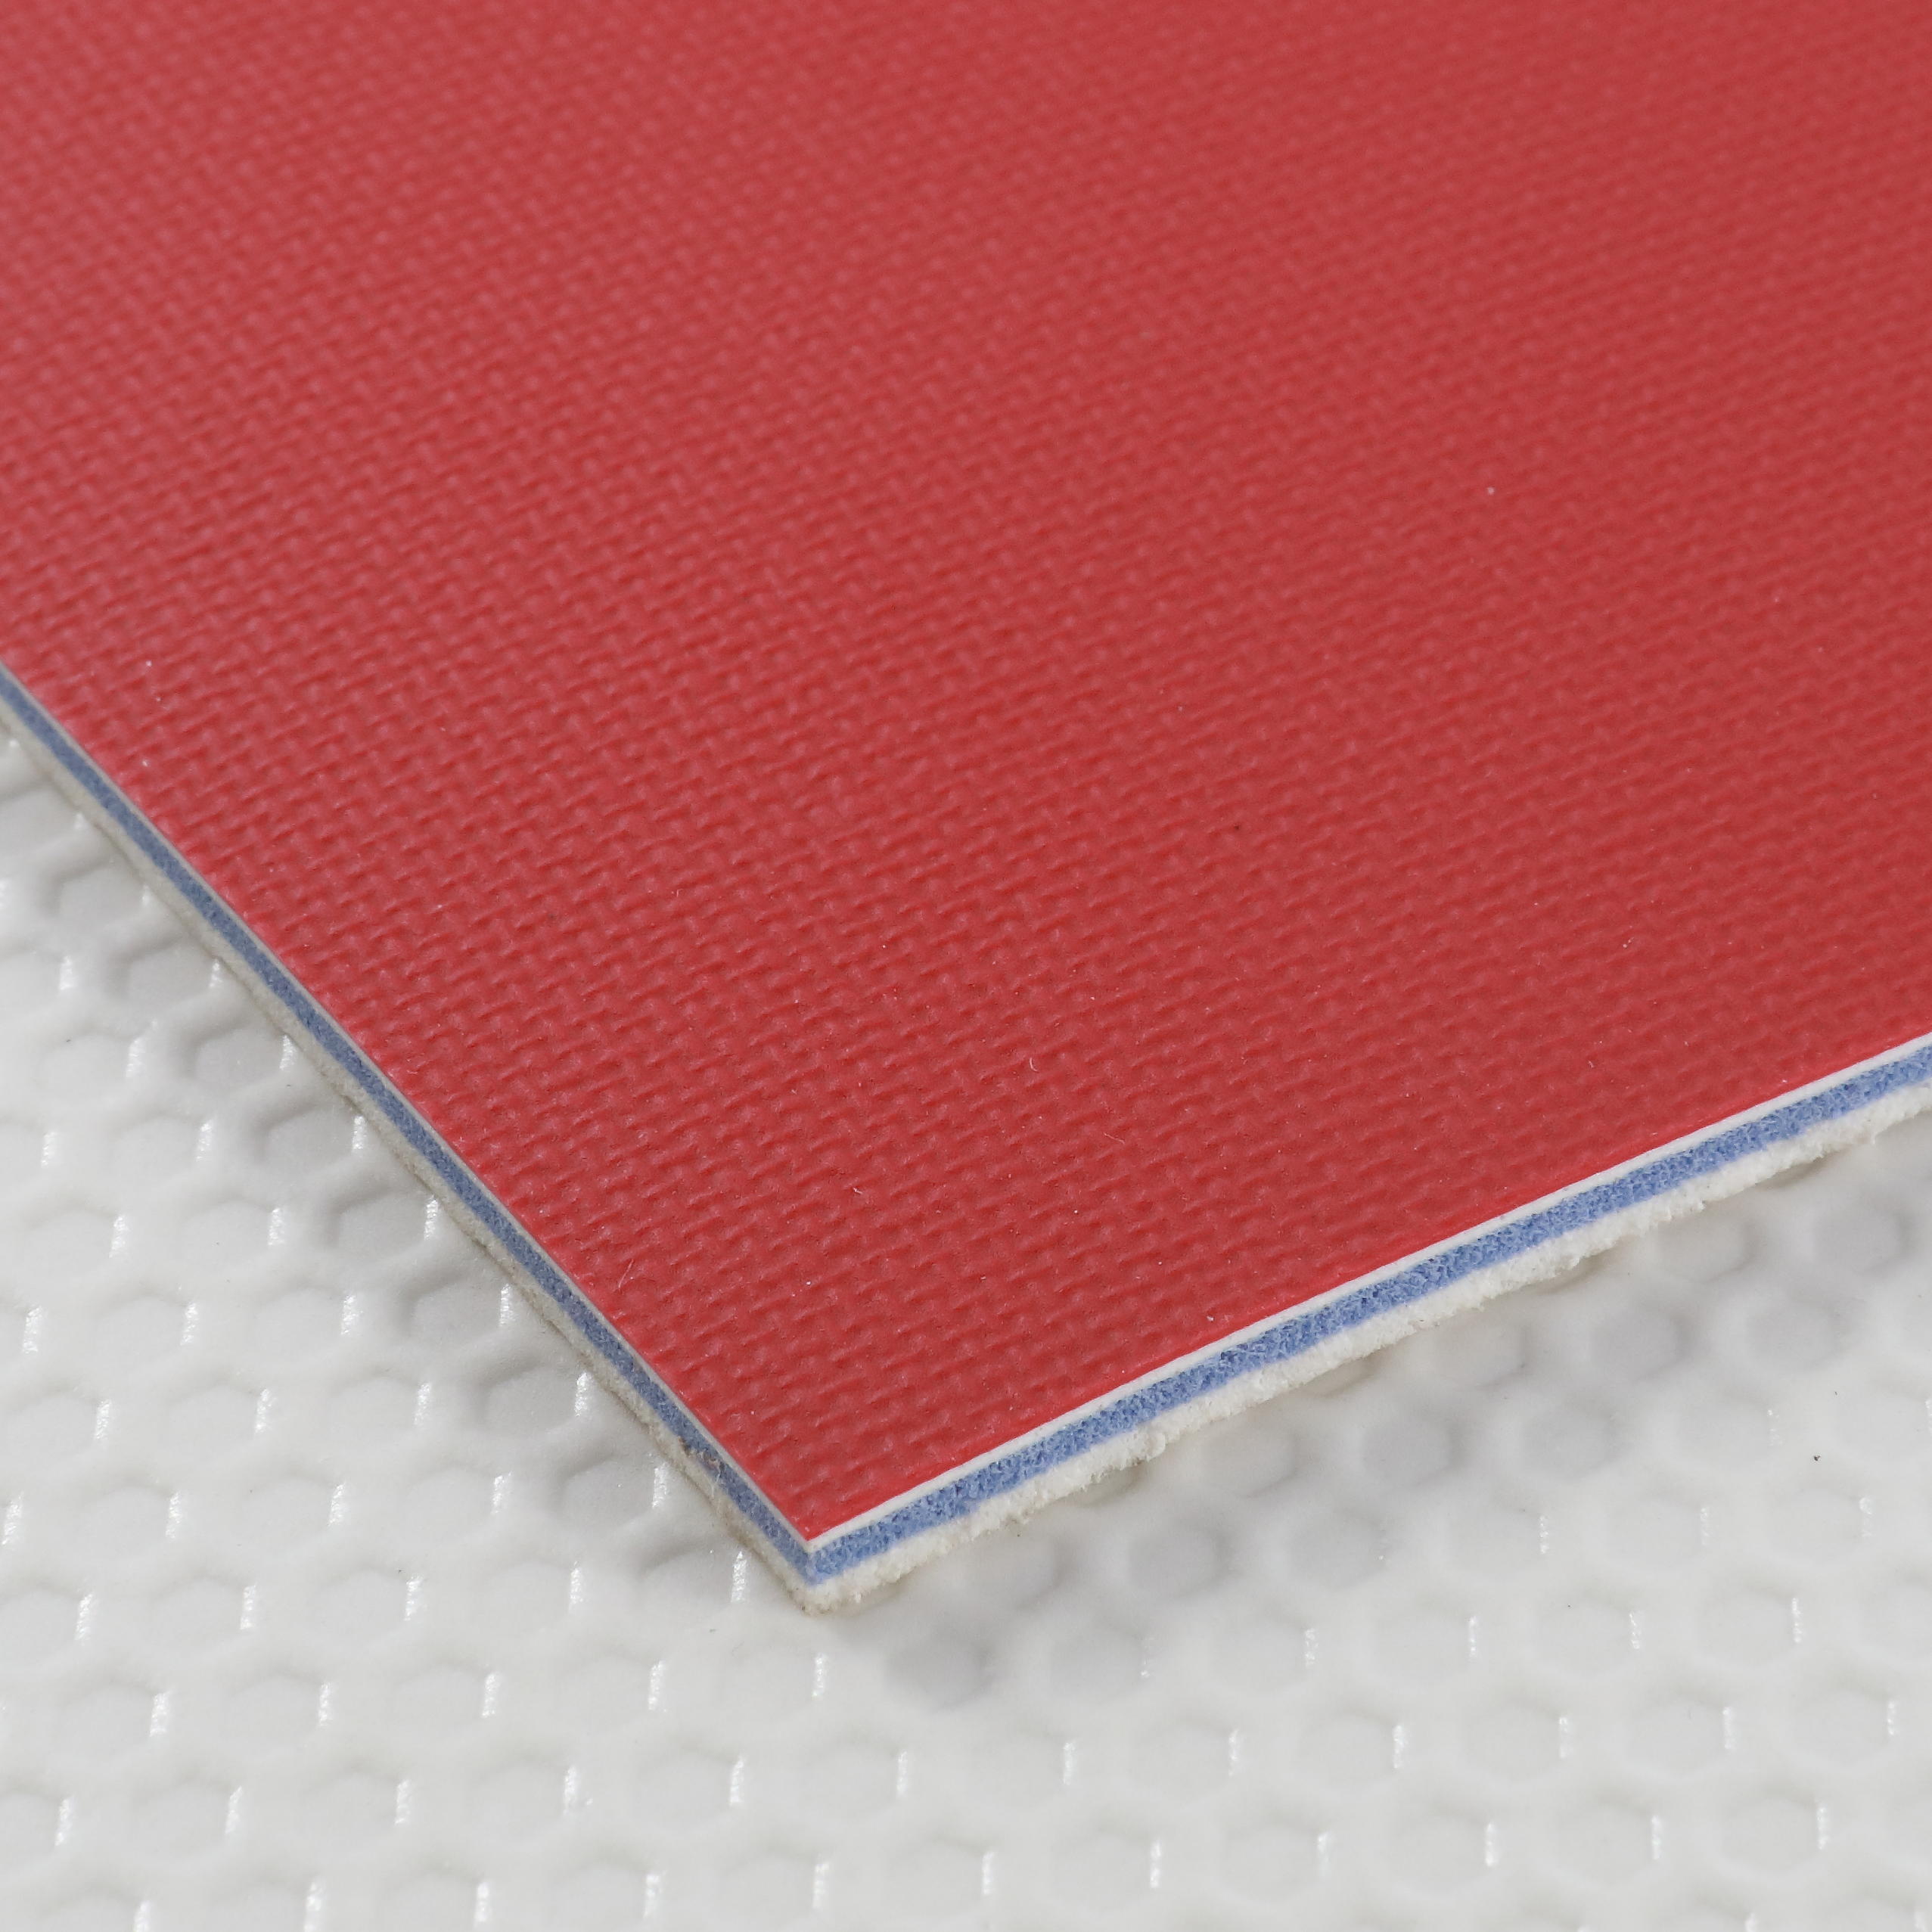 Revêtement de sol en PVC de haute qualité pour tapis de court de tennis